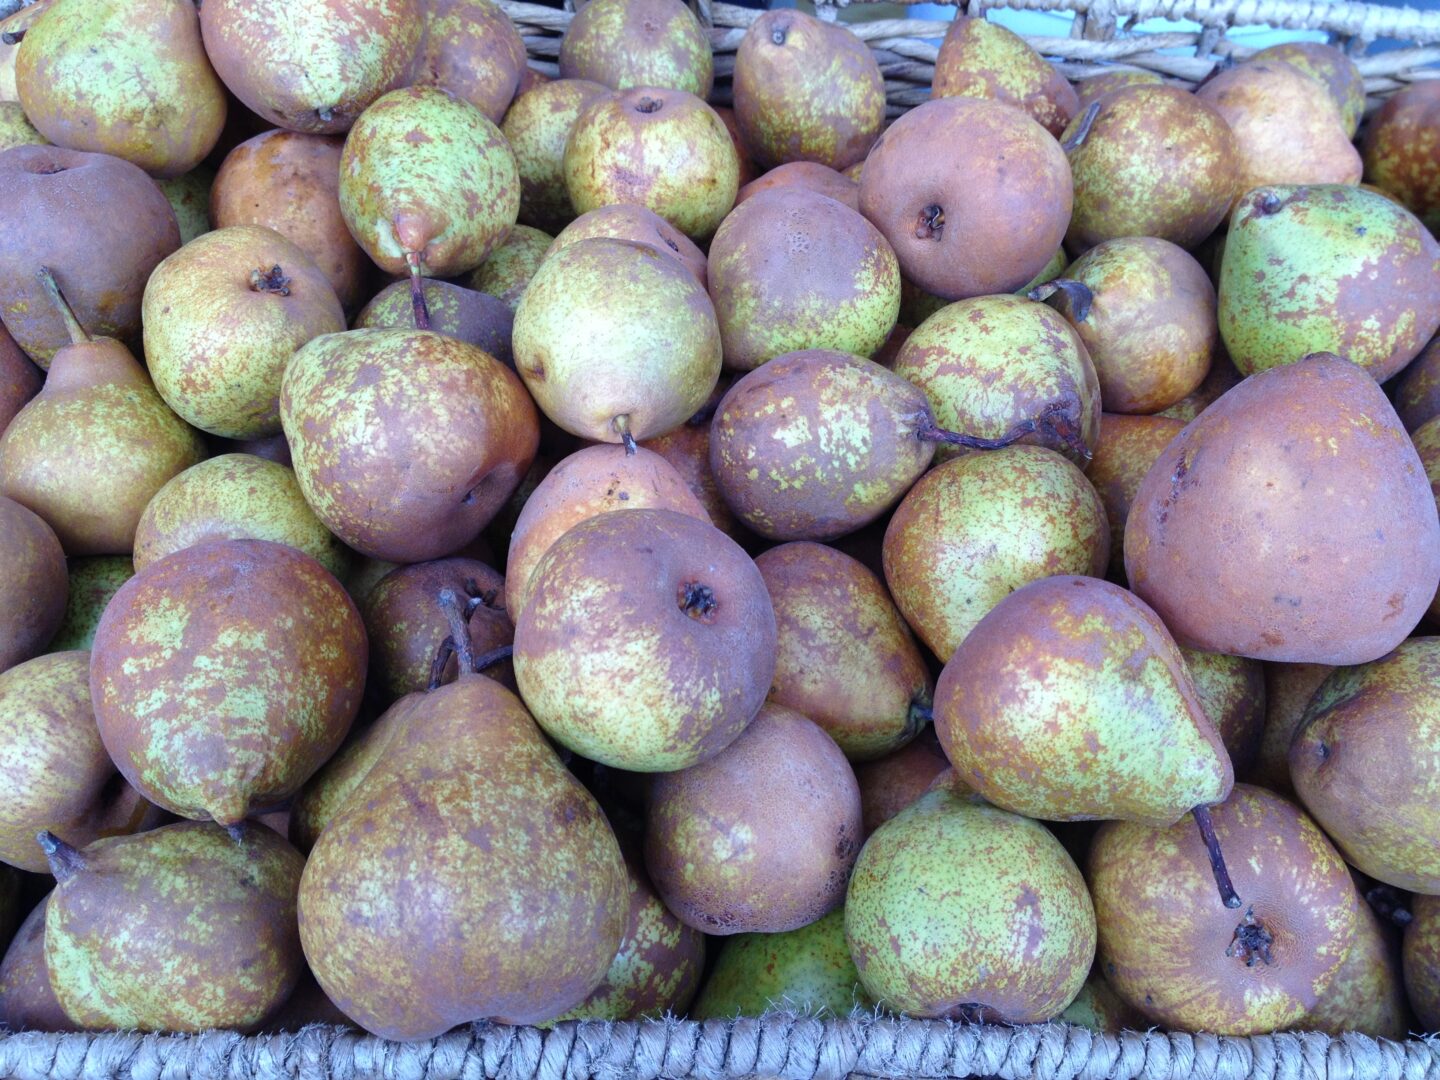 A wicker basket full of pears.